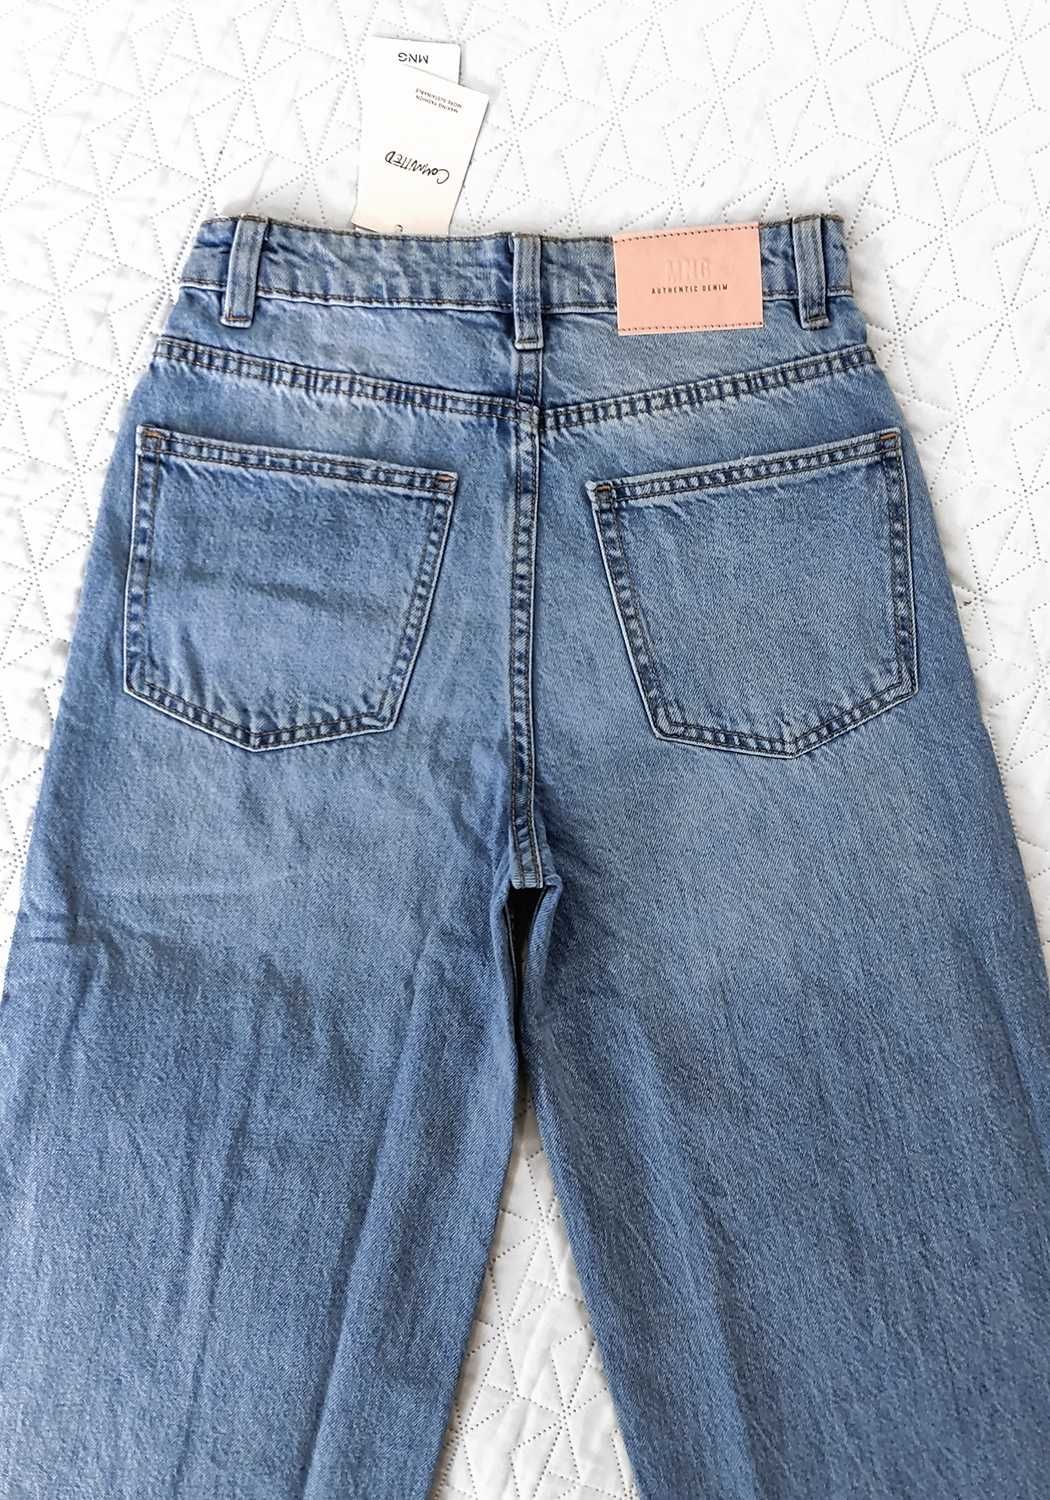 niebieskie jeansy z wysokim stanem i szerokimi nogawkami S 36 Mango